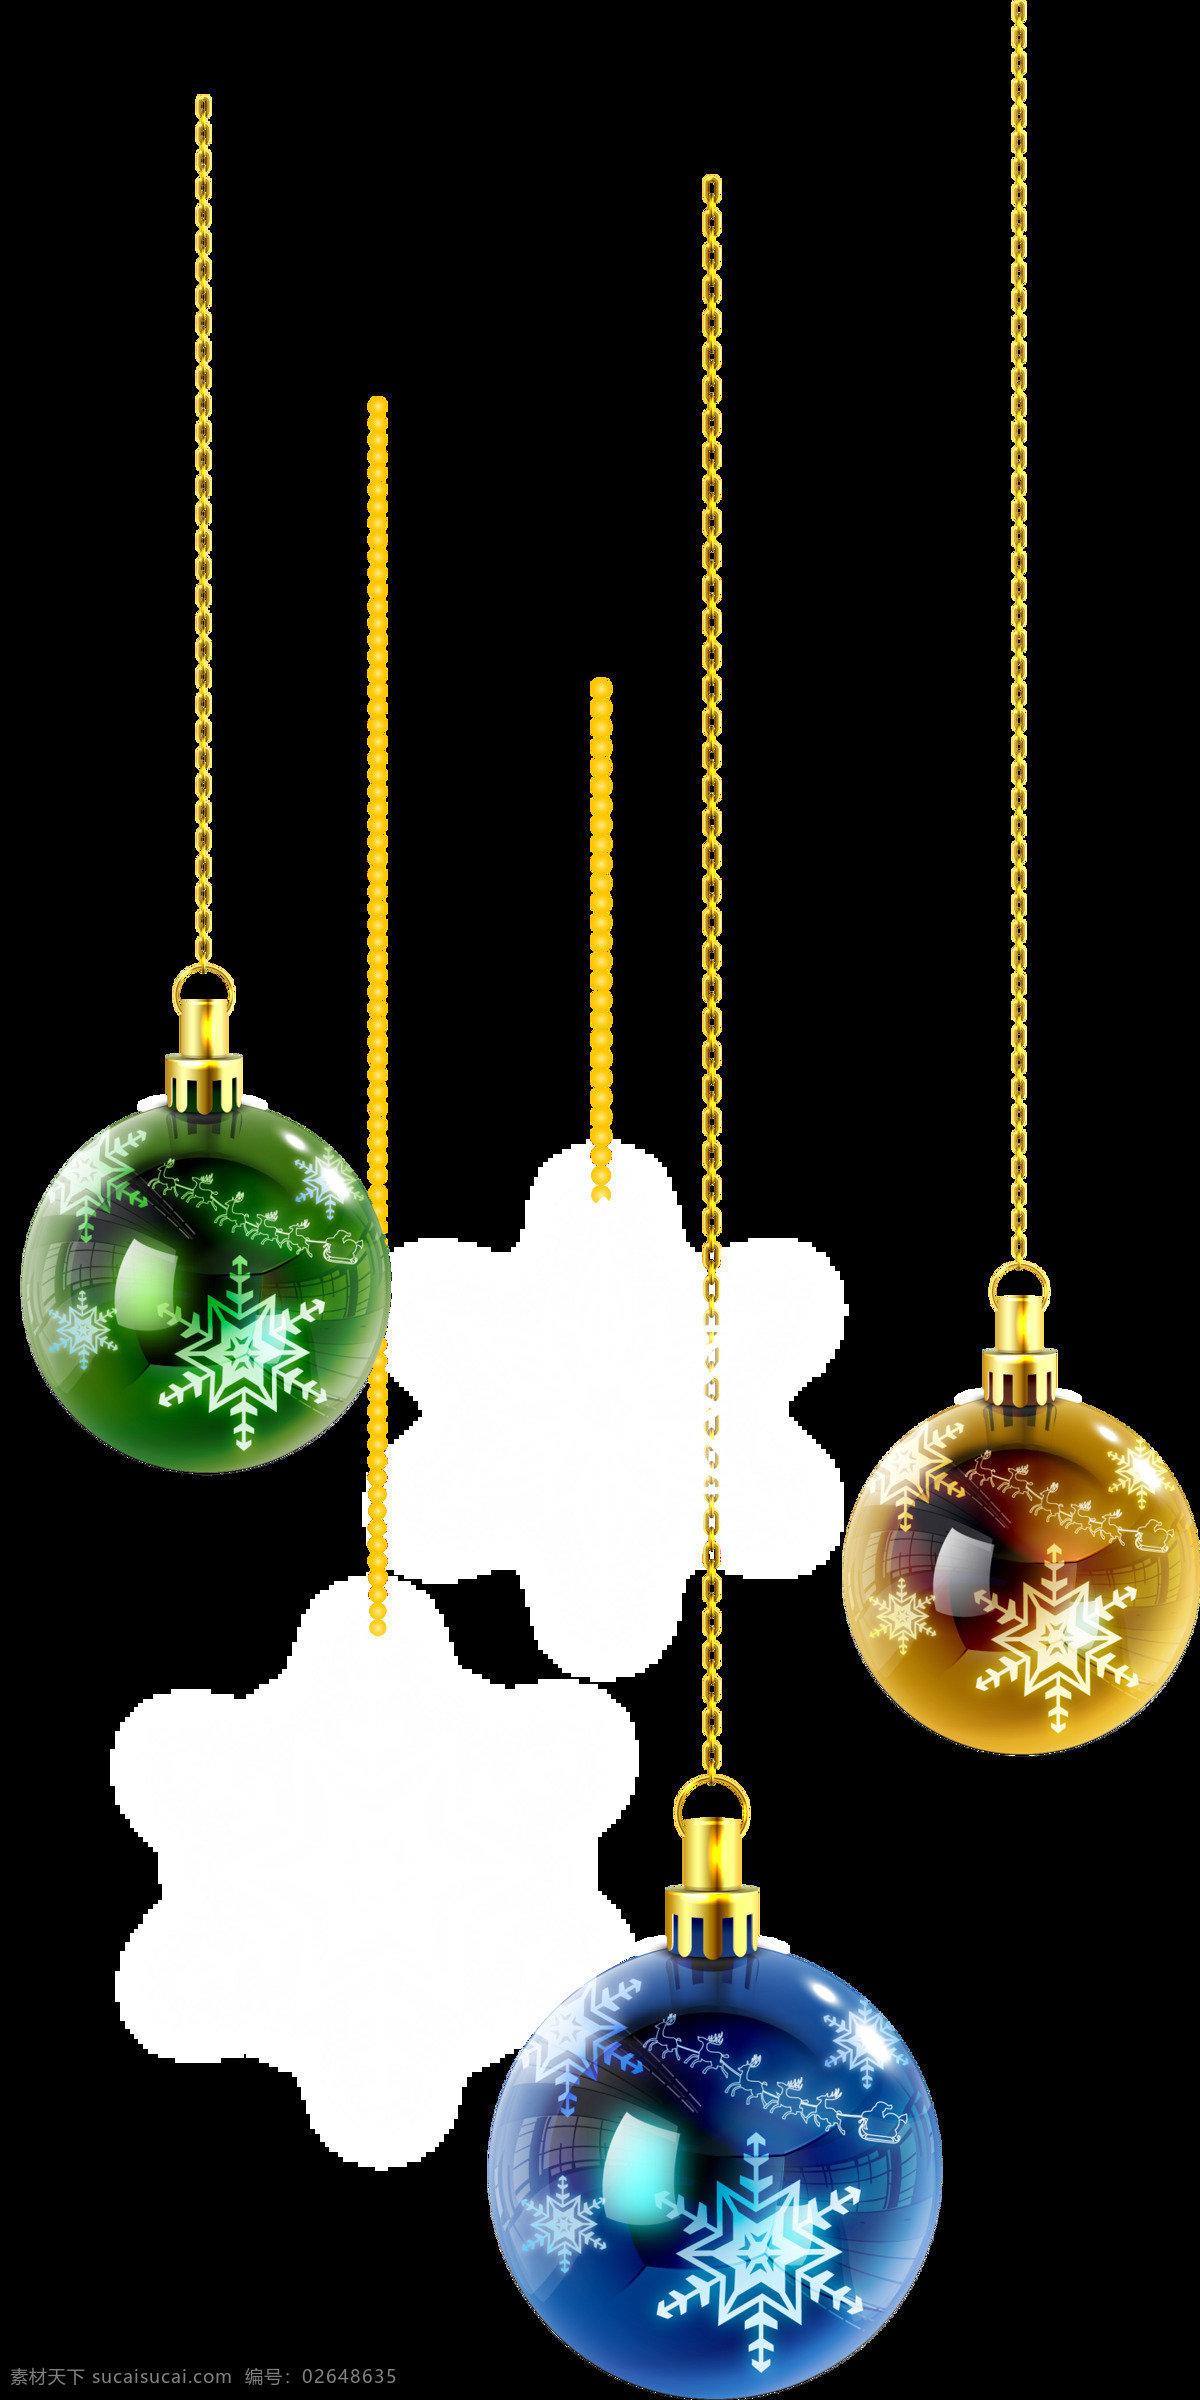 手绘 圣诞 吊球 元素 png元素 浪漫 免抠元素 圣诞吊球 透明元素 小清新 雪花 装饰